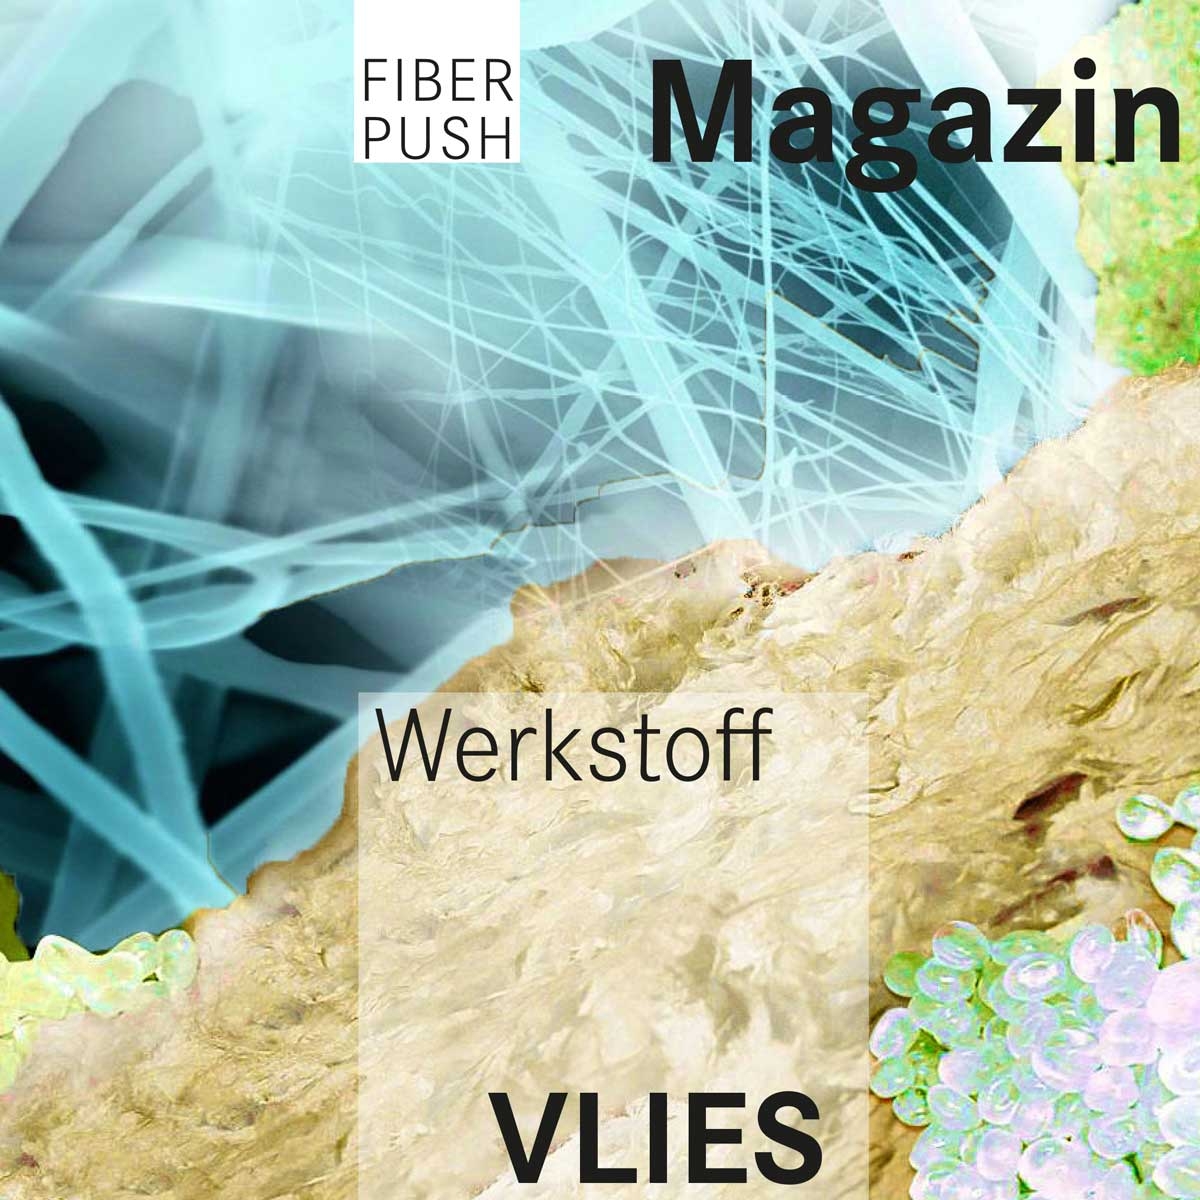 FiberPush Magazin "VLIES" - als Download